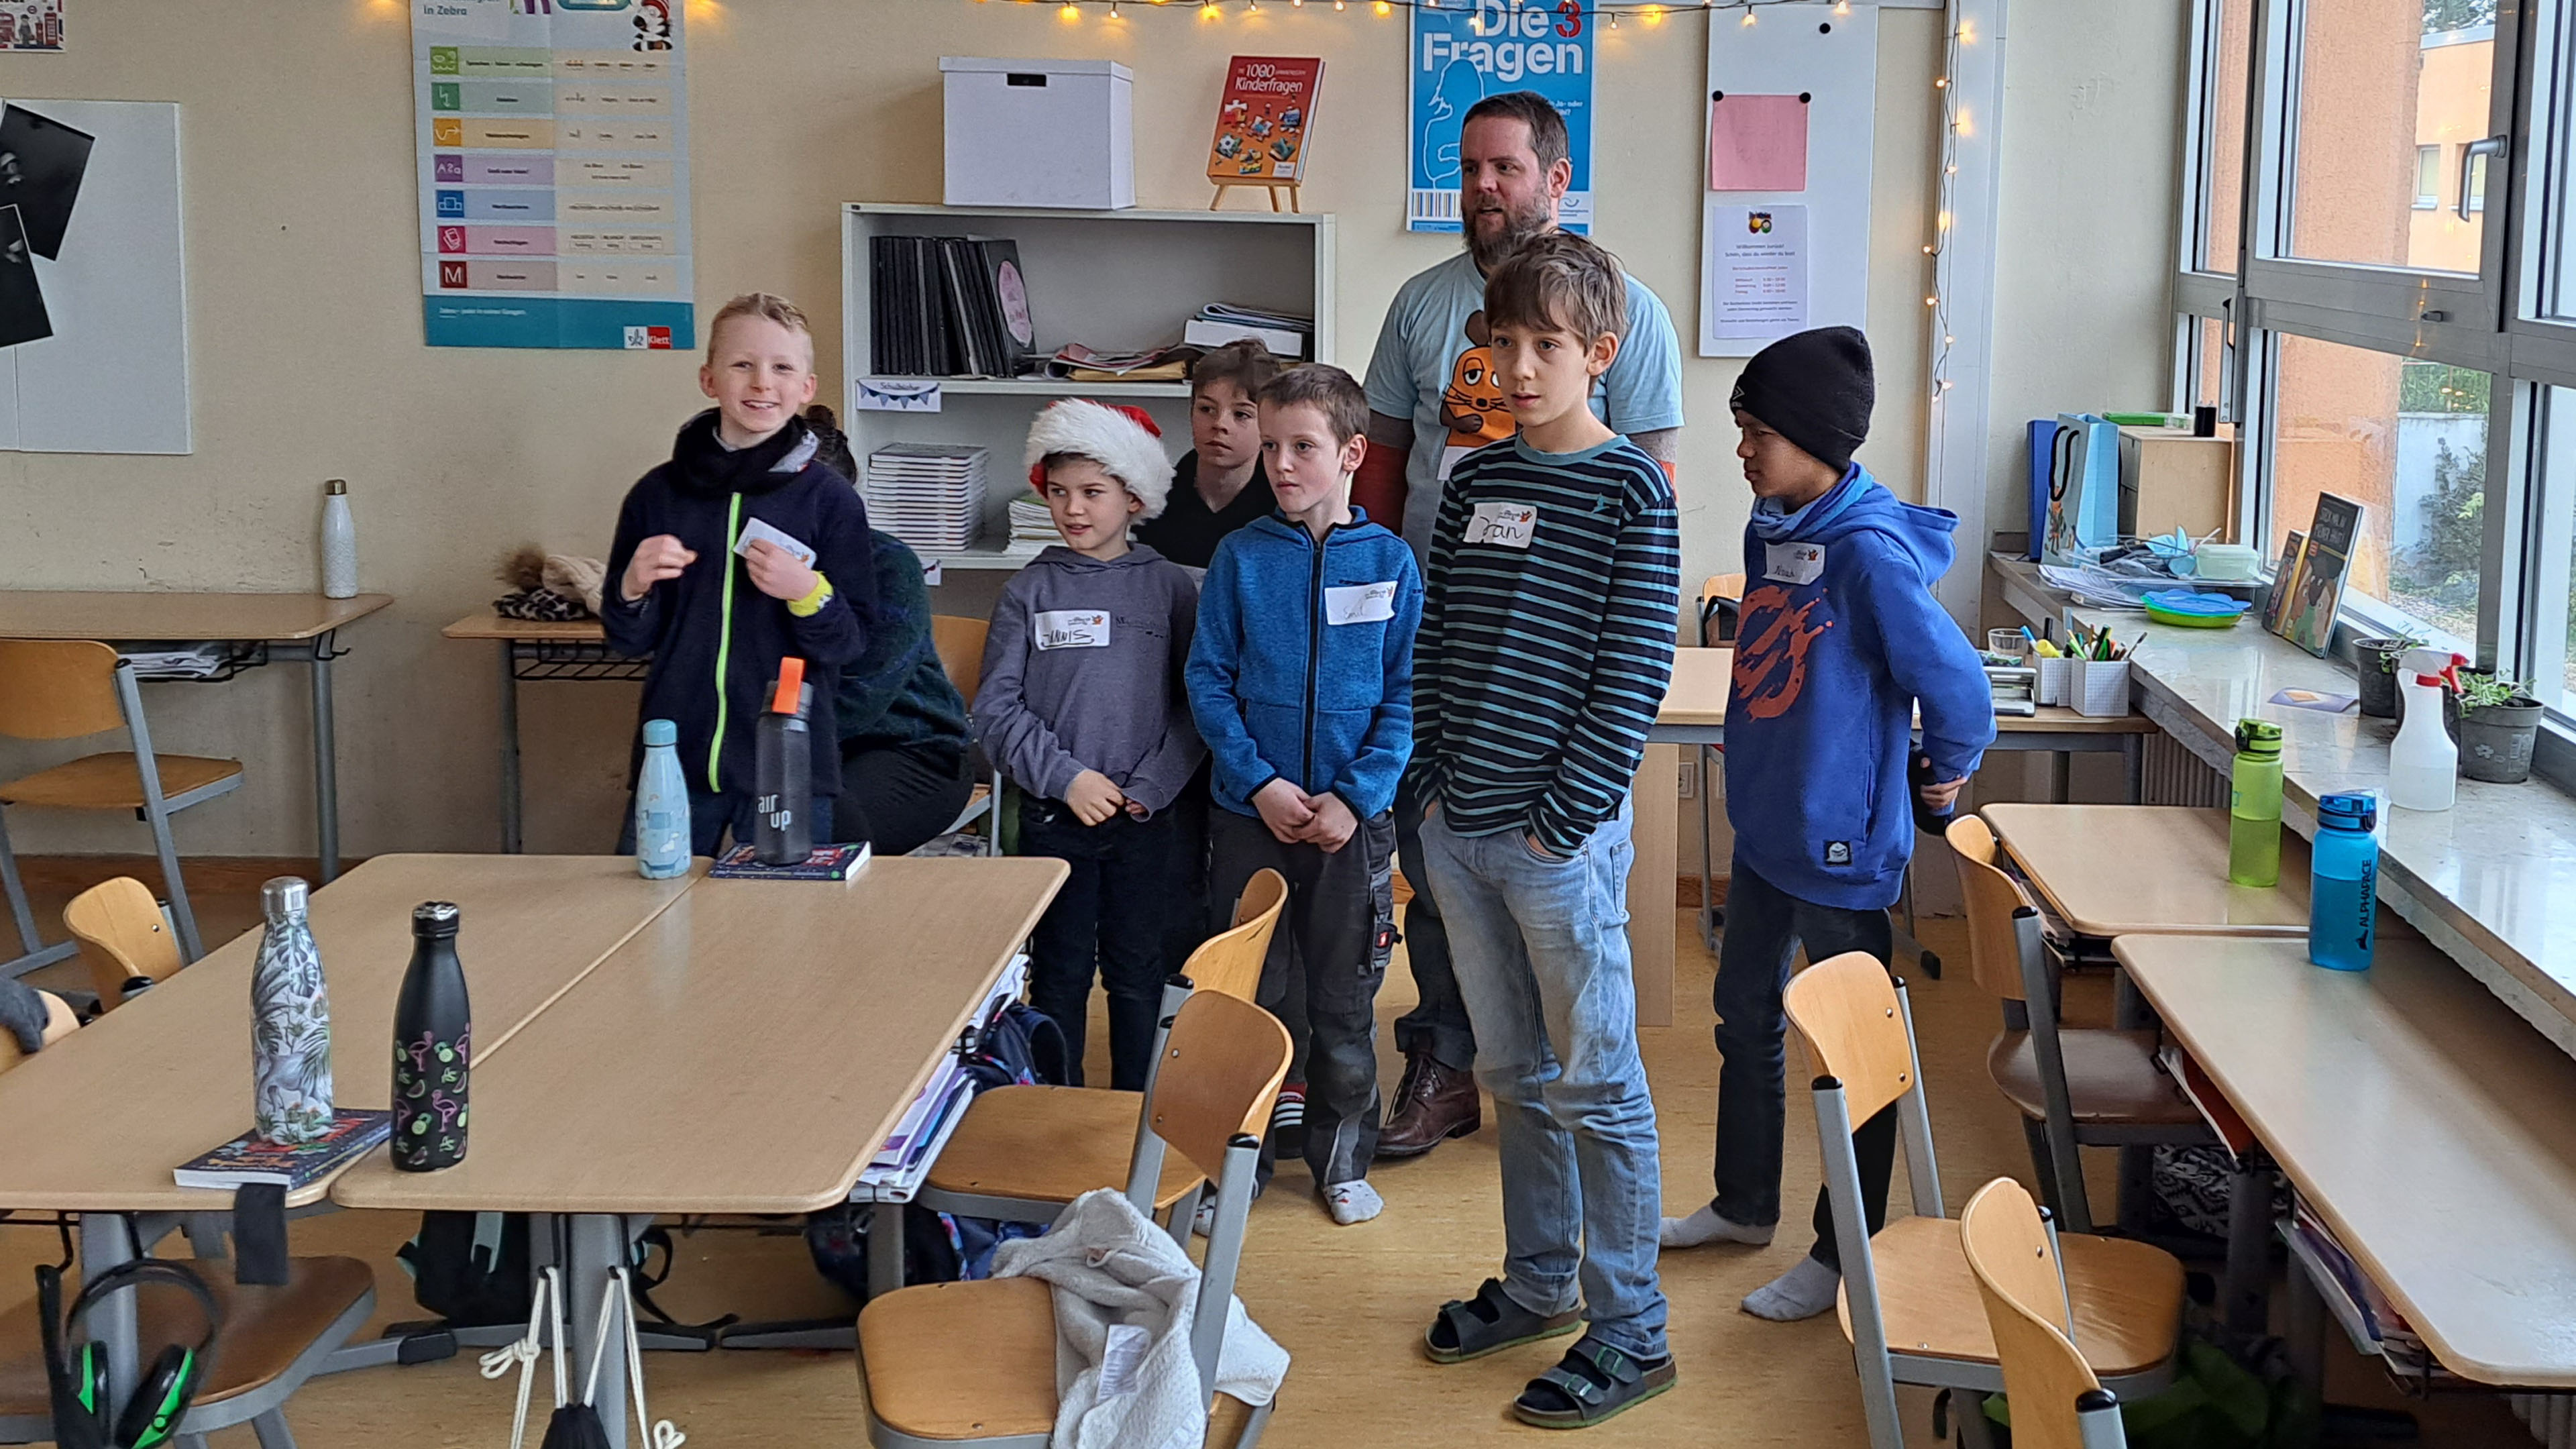 Kinder stehen in einer Ecke des Klassenzimmers